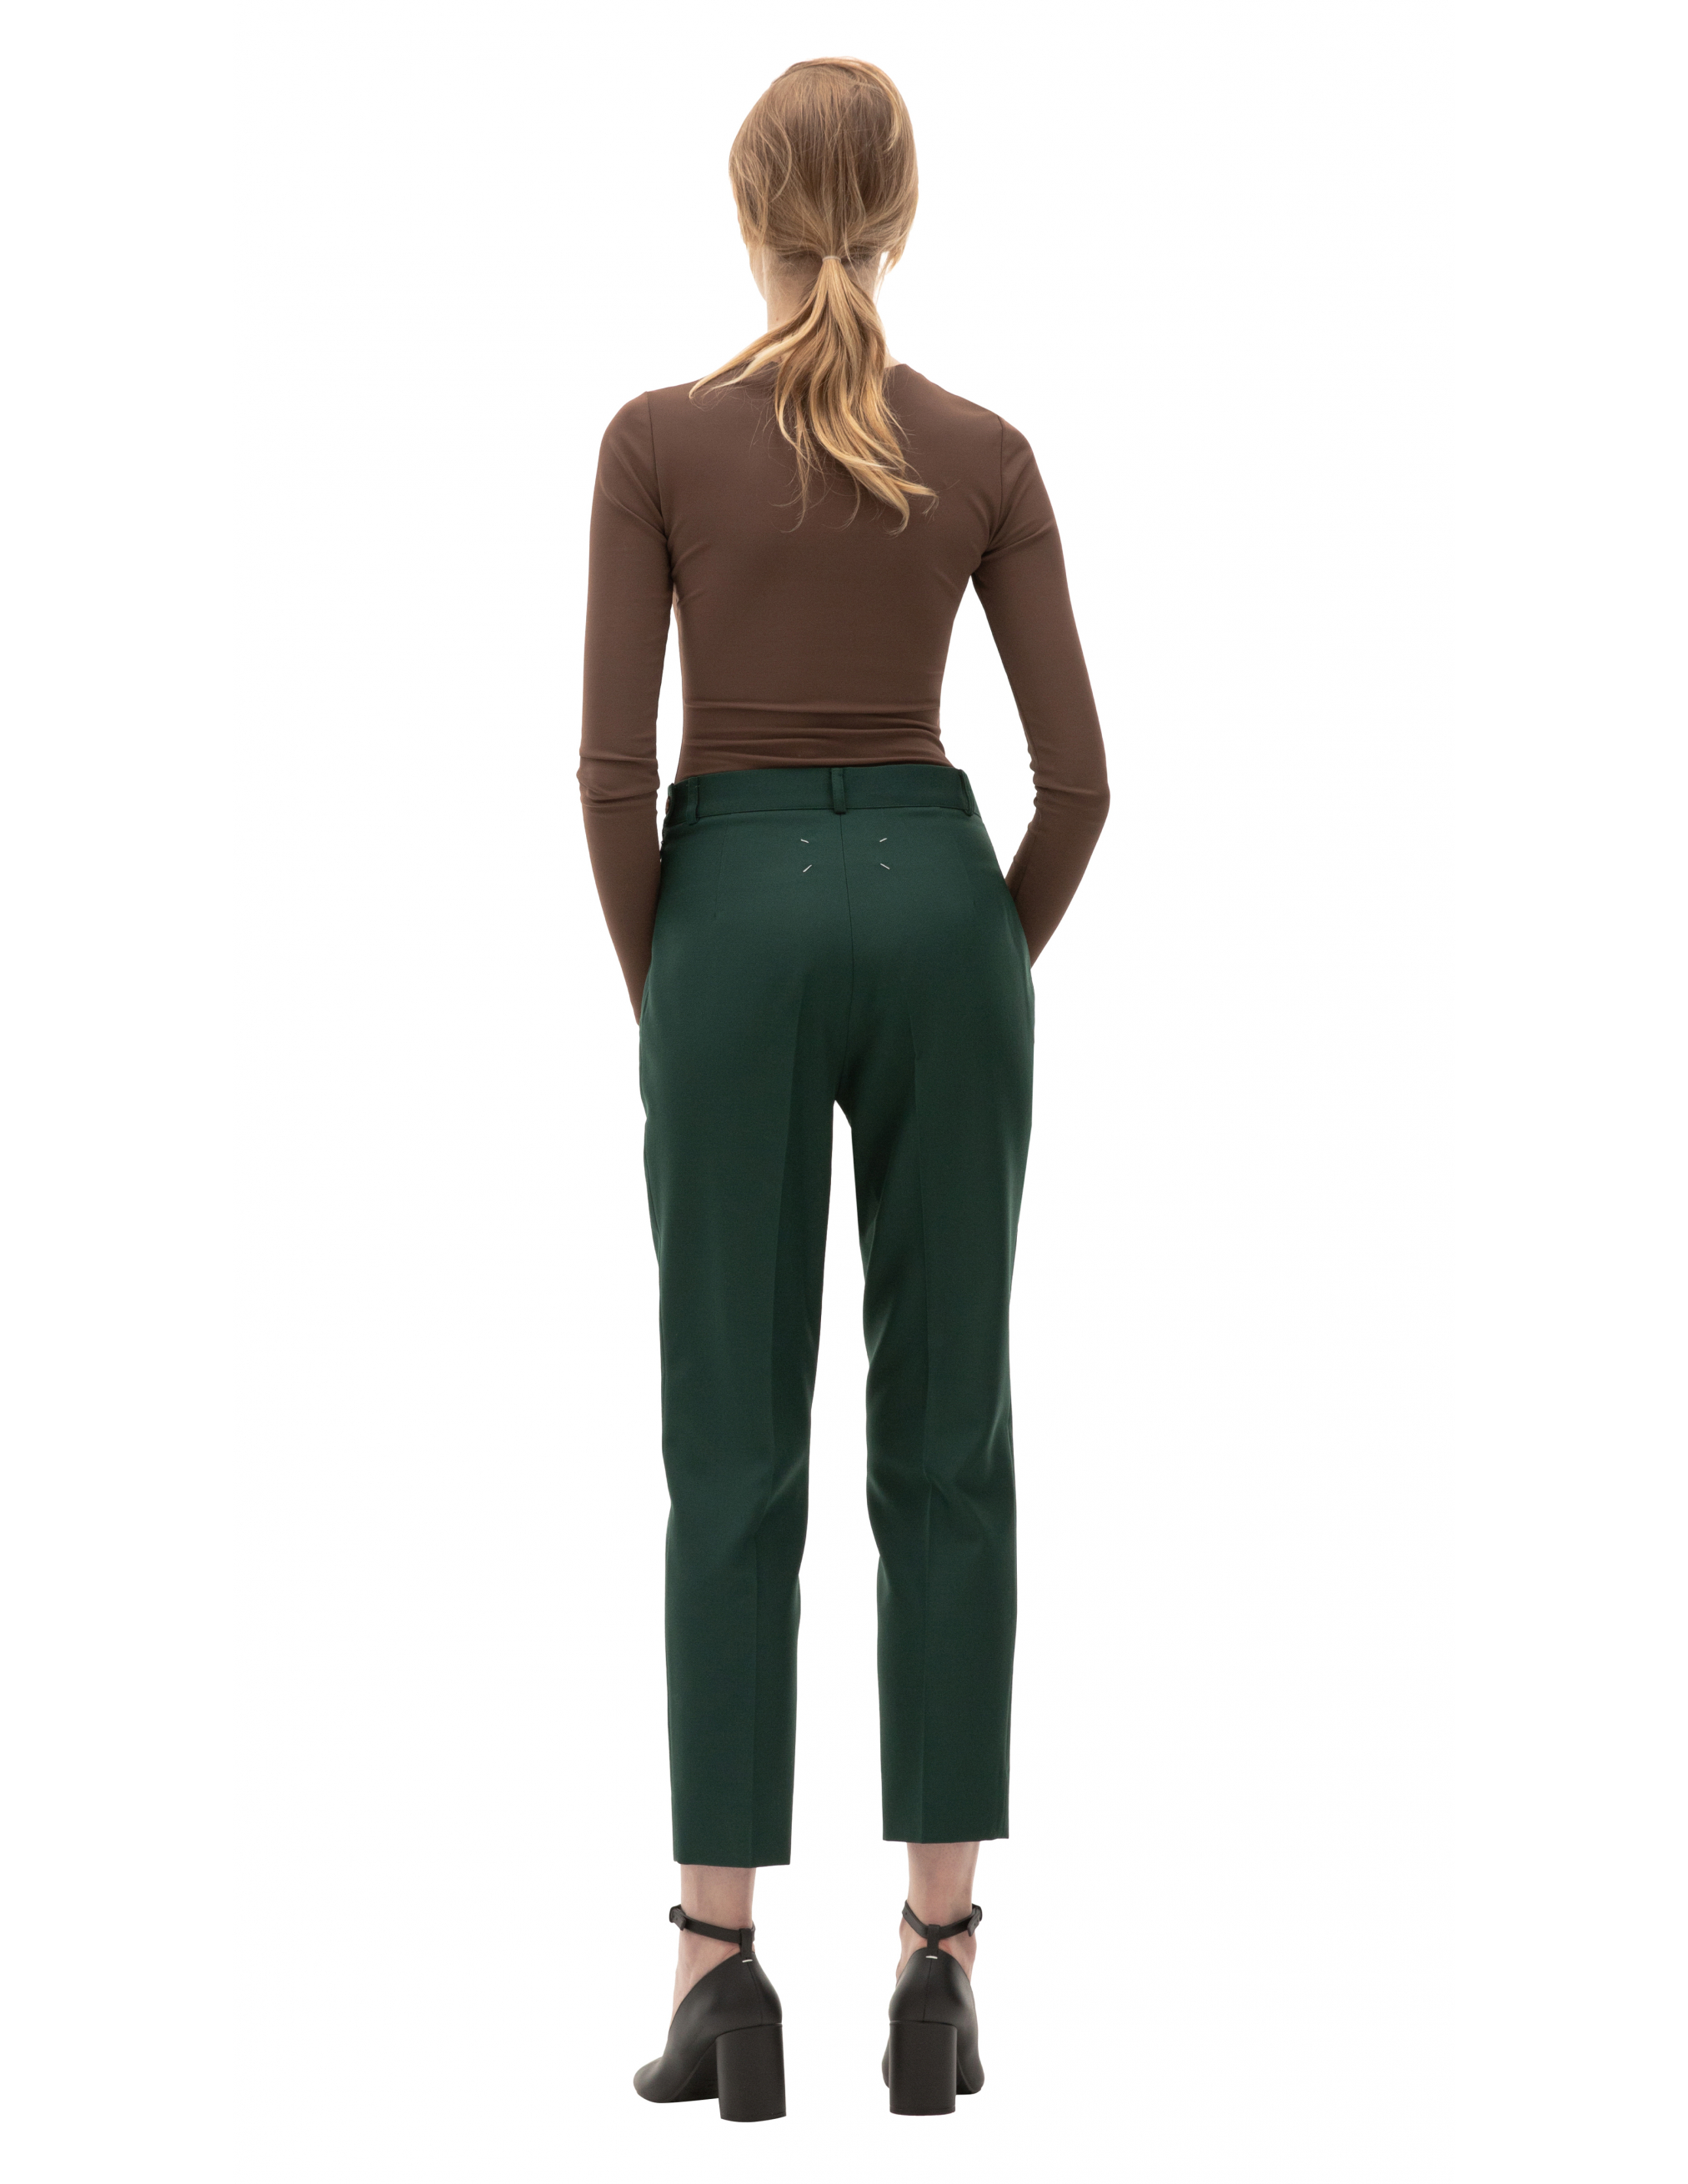 Зеленые брюки с высокой посадкой Maison Margiela S51KA0530/S53220/632, размер 44;42;40 S51KA0530/S53220/632 - фото 3